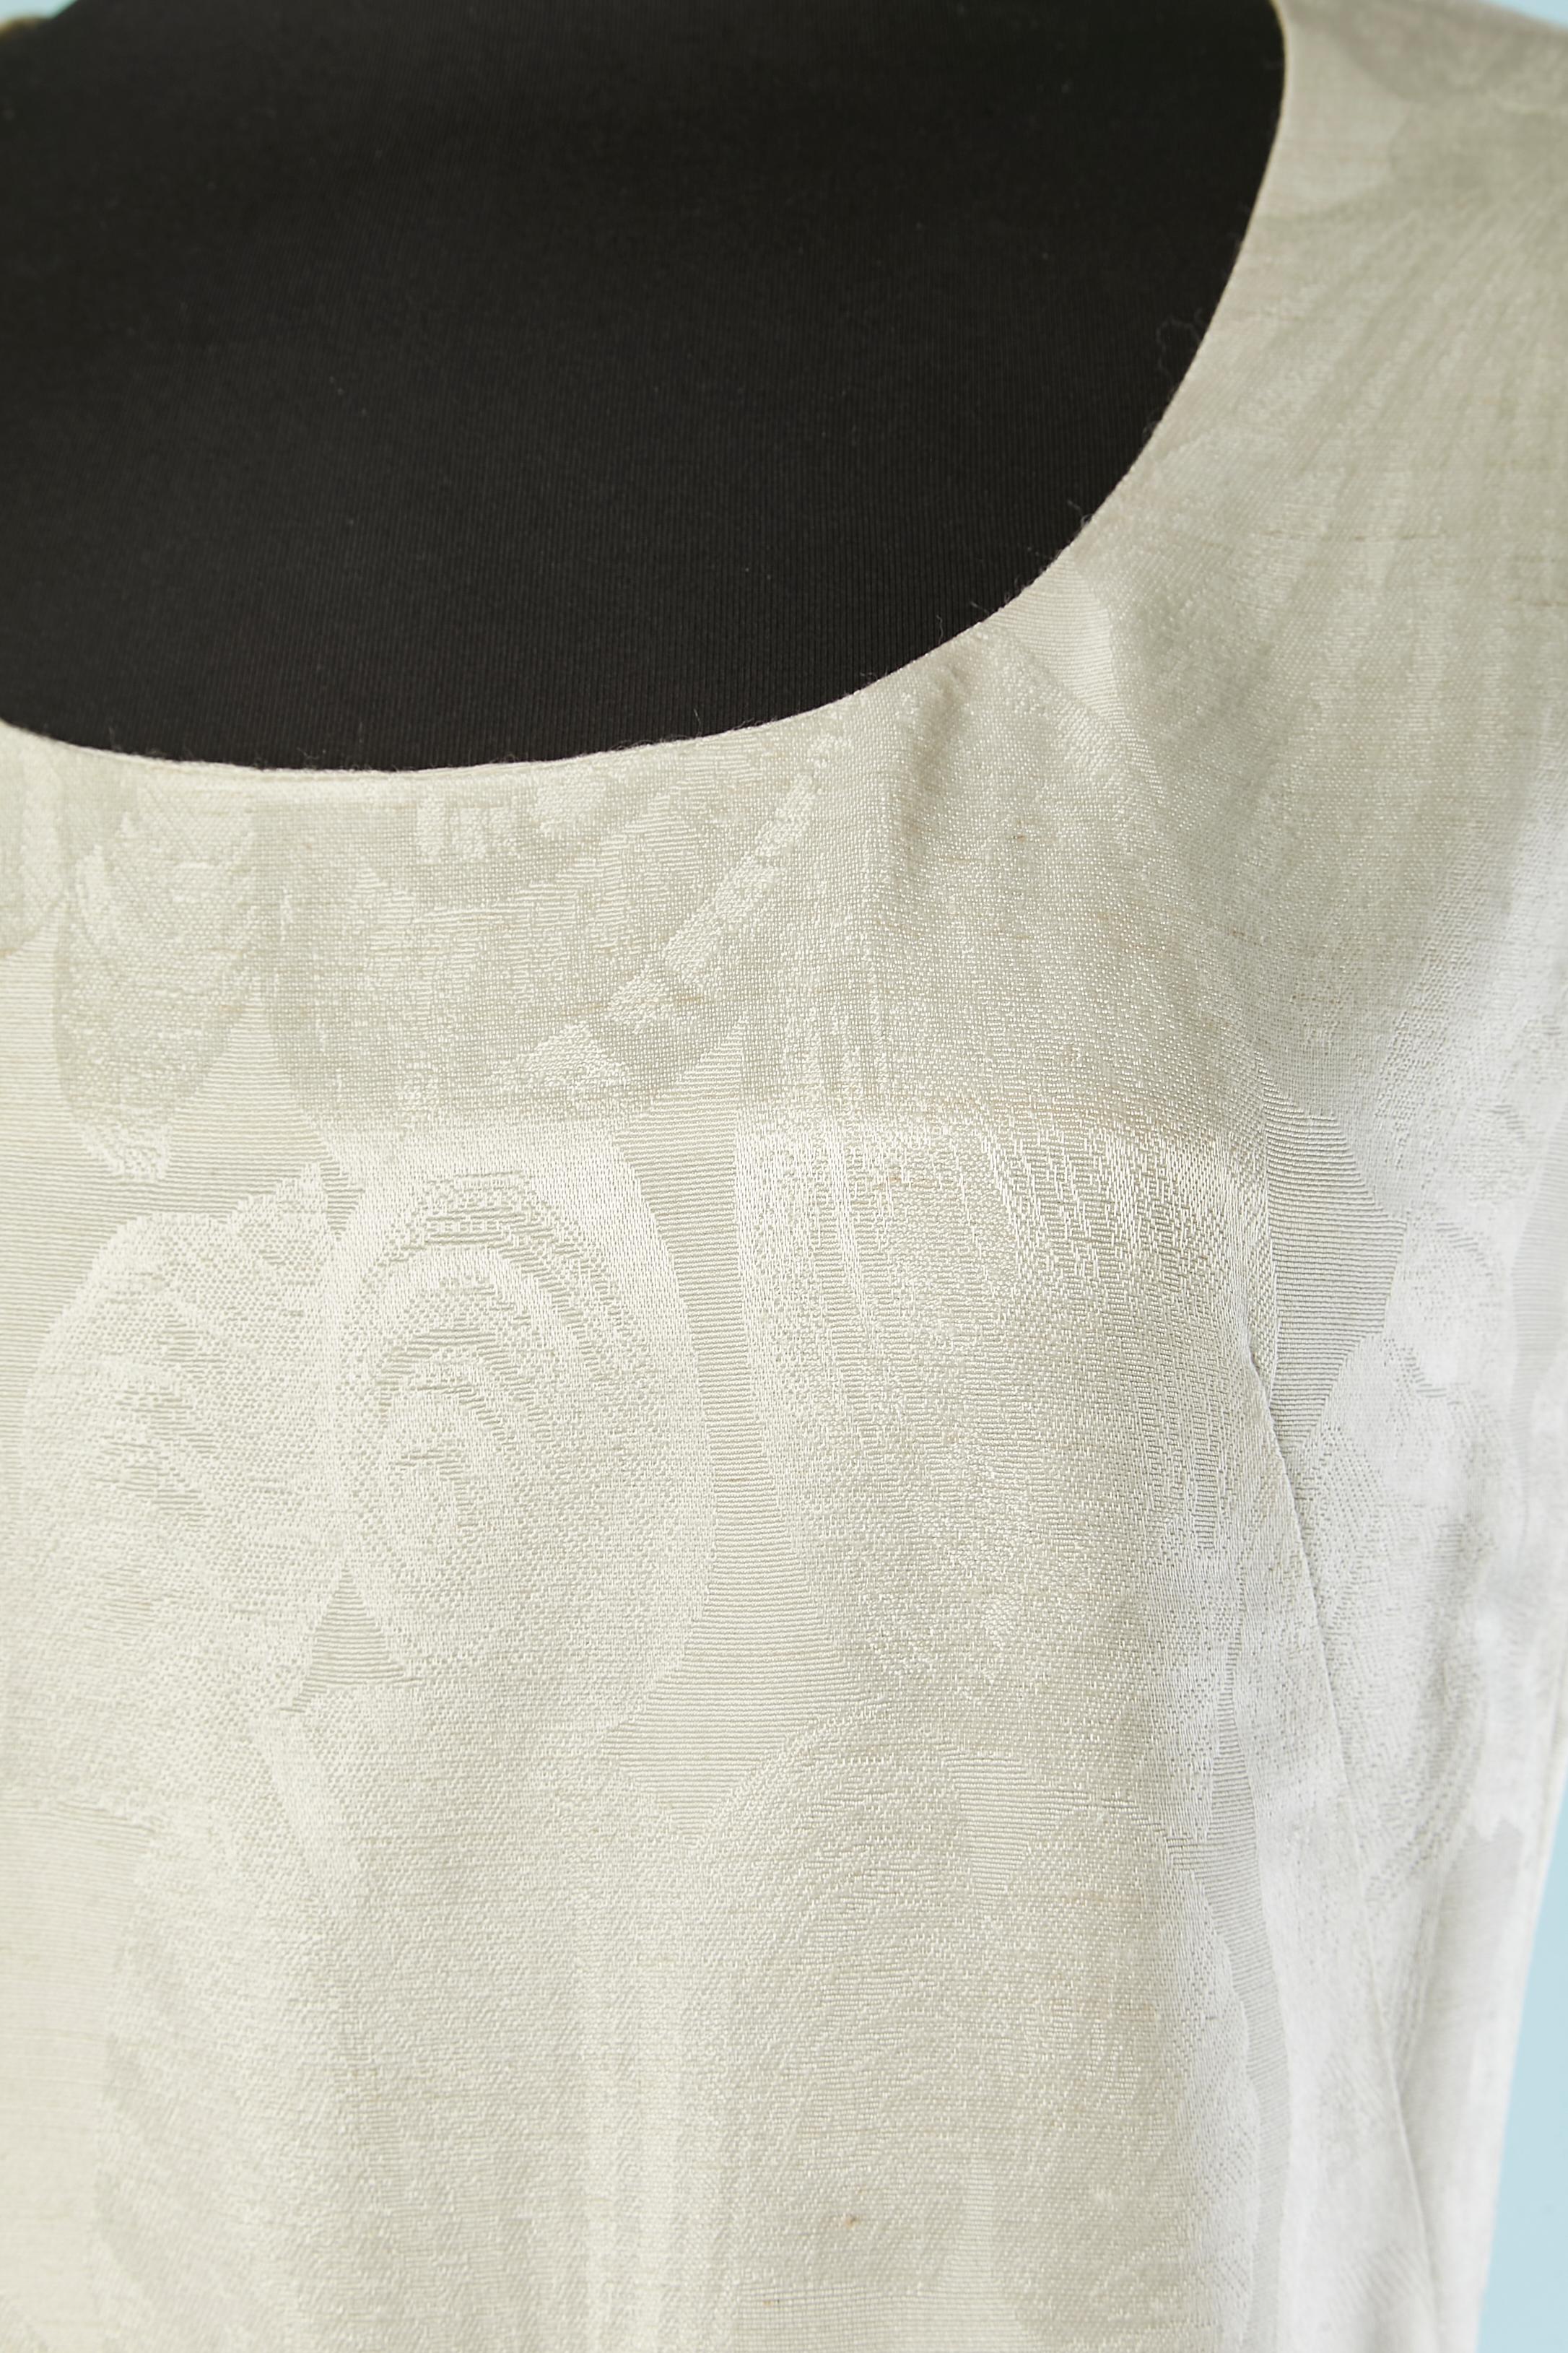 Robe de cocktail (ou robe de mariée) sans manches en jacquard de soie blanc avec motif de coquillages. Fermeture éclair au milieu du dos + crochets et œillets. 
Doublure en soie. Il pourrait s'agir d'un échantillon d'exposition ou d'un échantillon